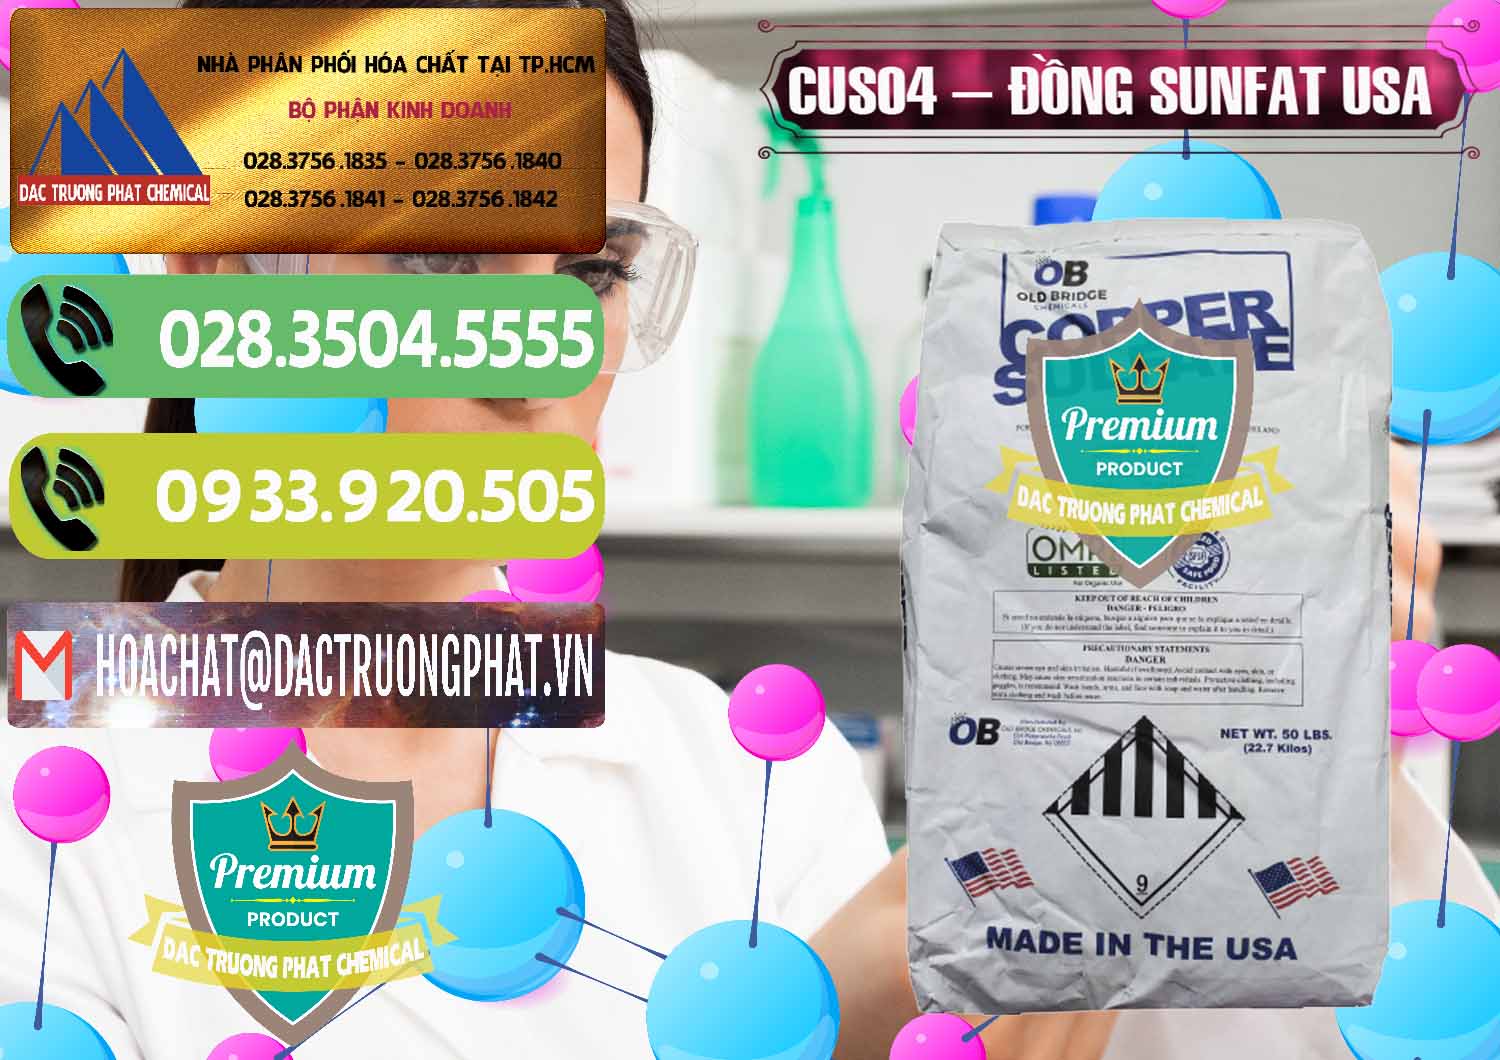 Nơi chuyên cung ứng _ bán CuSO4 – Đồng Sunfat Mỹ USA - 0479 - Công ty chuyên nhập khẩu và phân phối hóa chất tại TP.HCM - hoachatmientay.vn